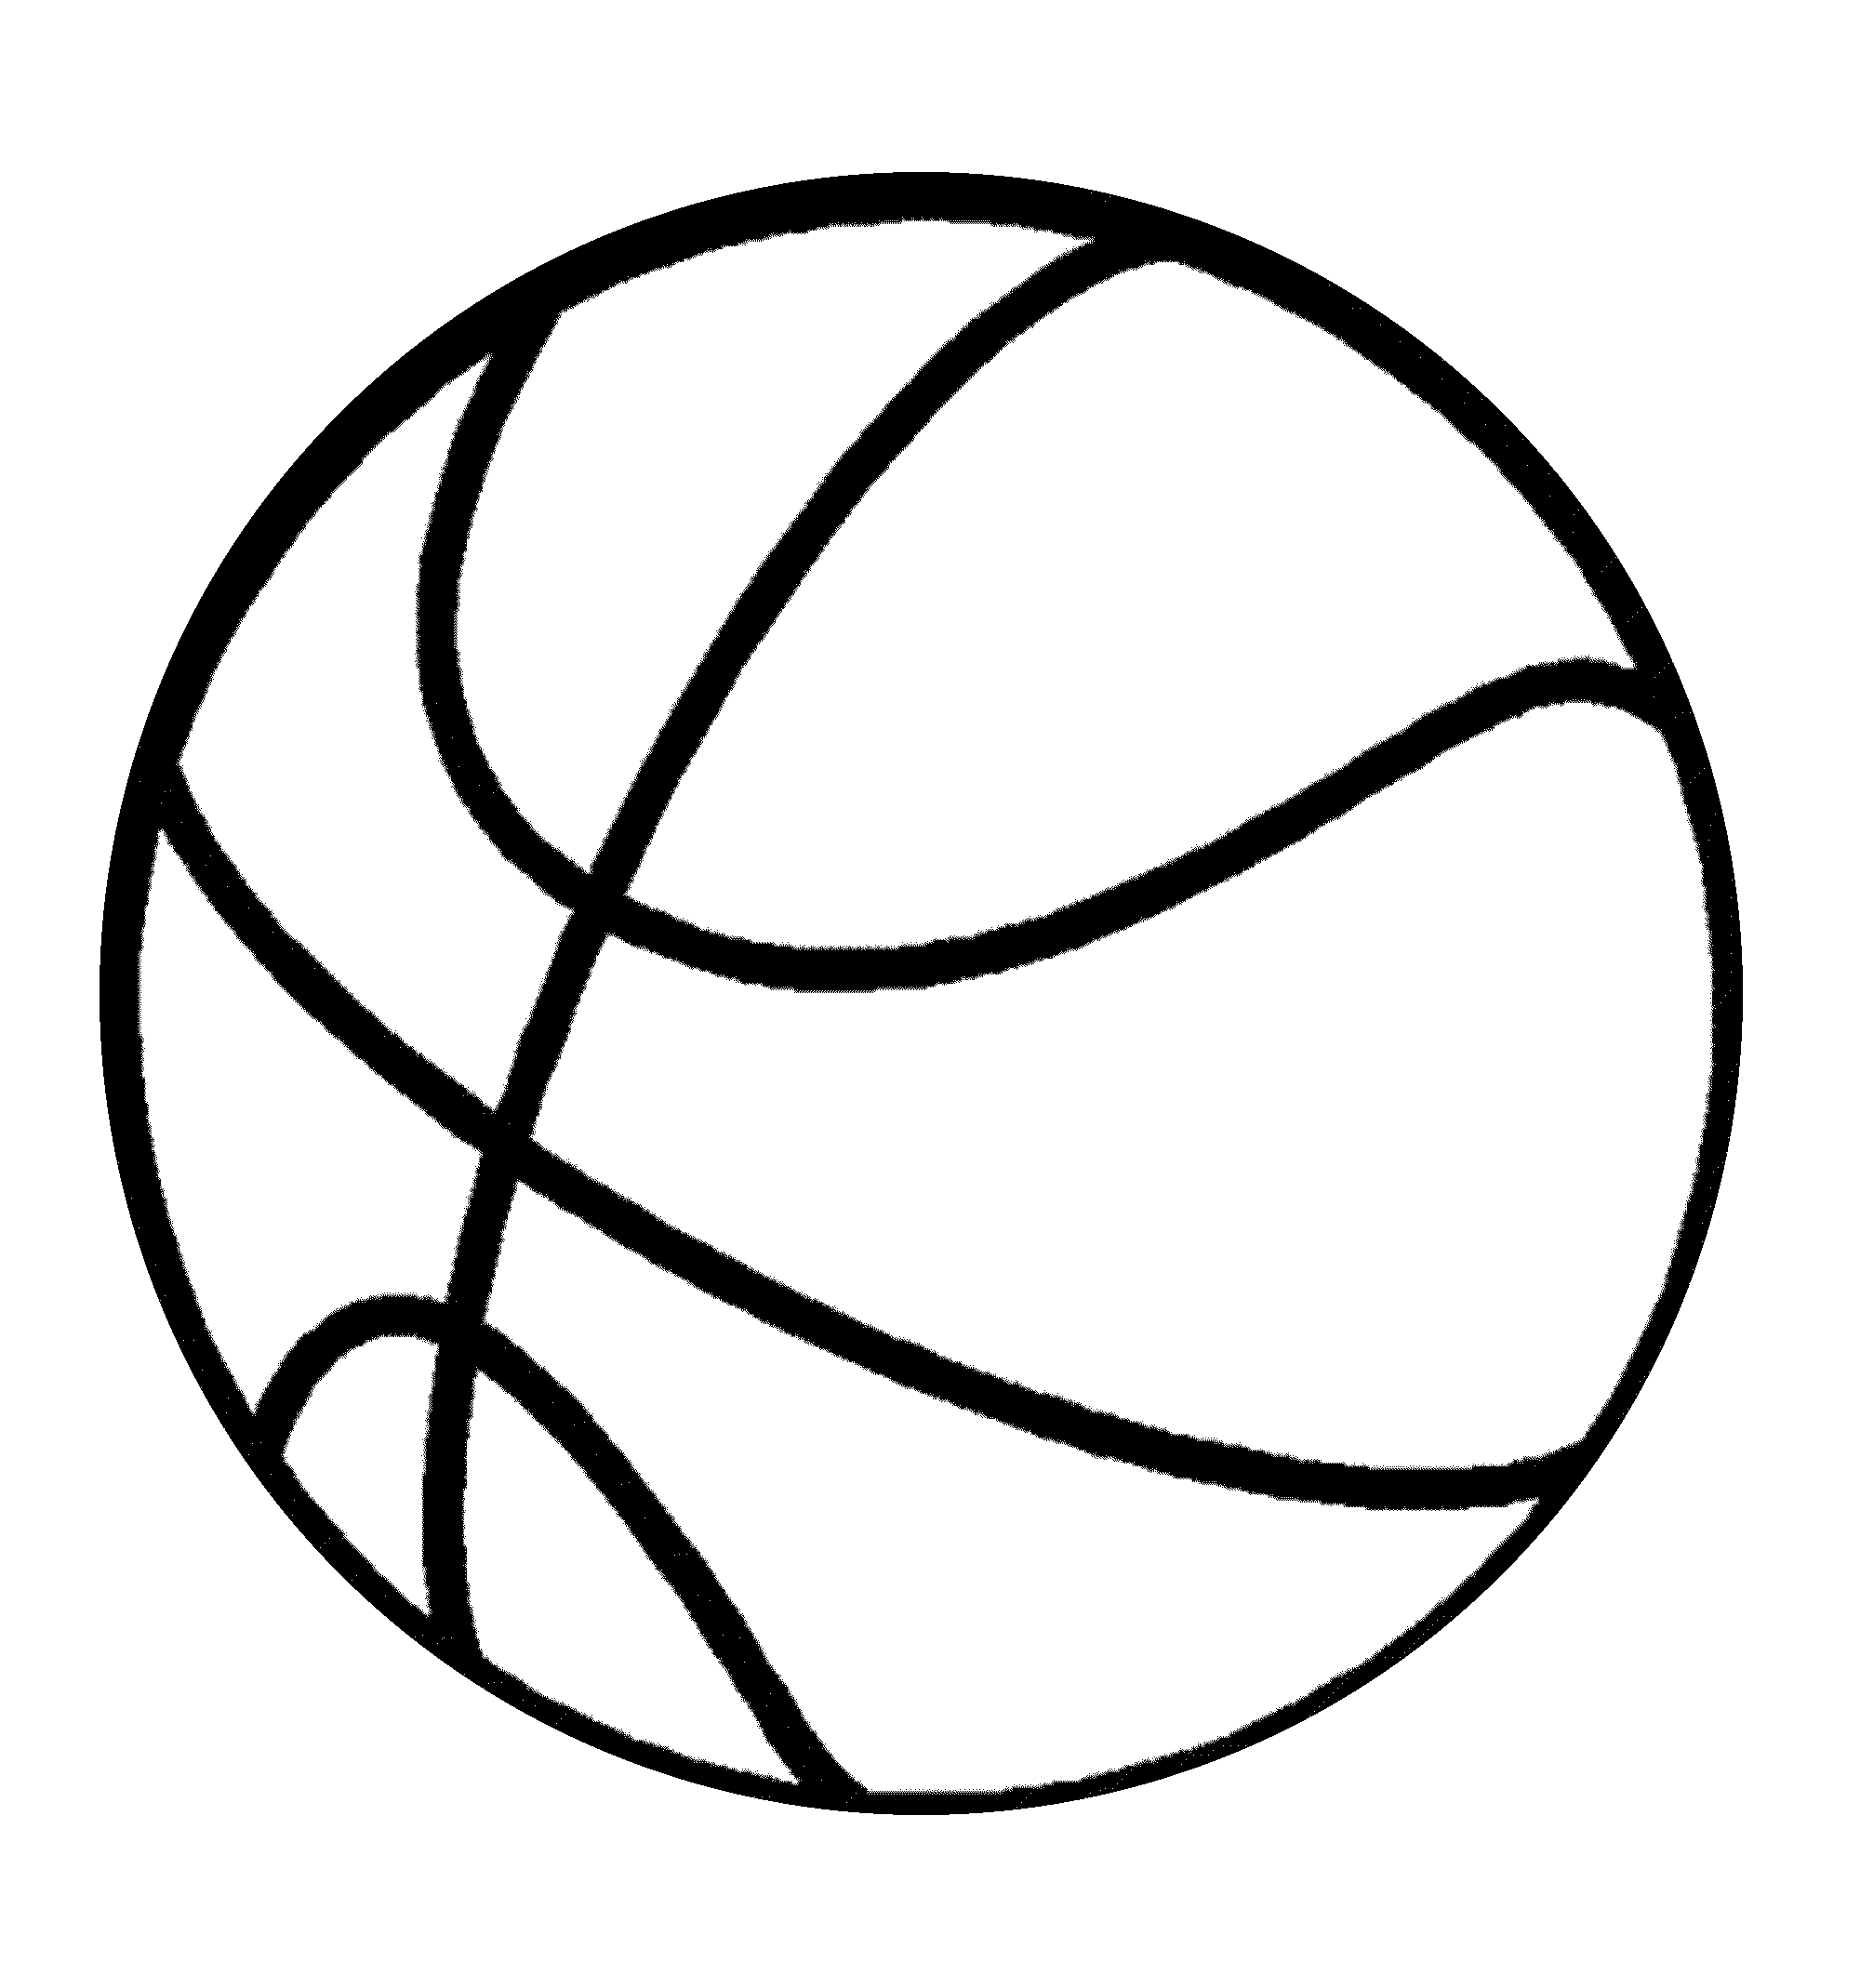 Basketball ball to color